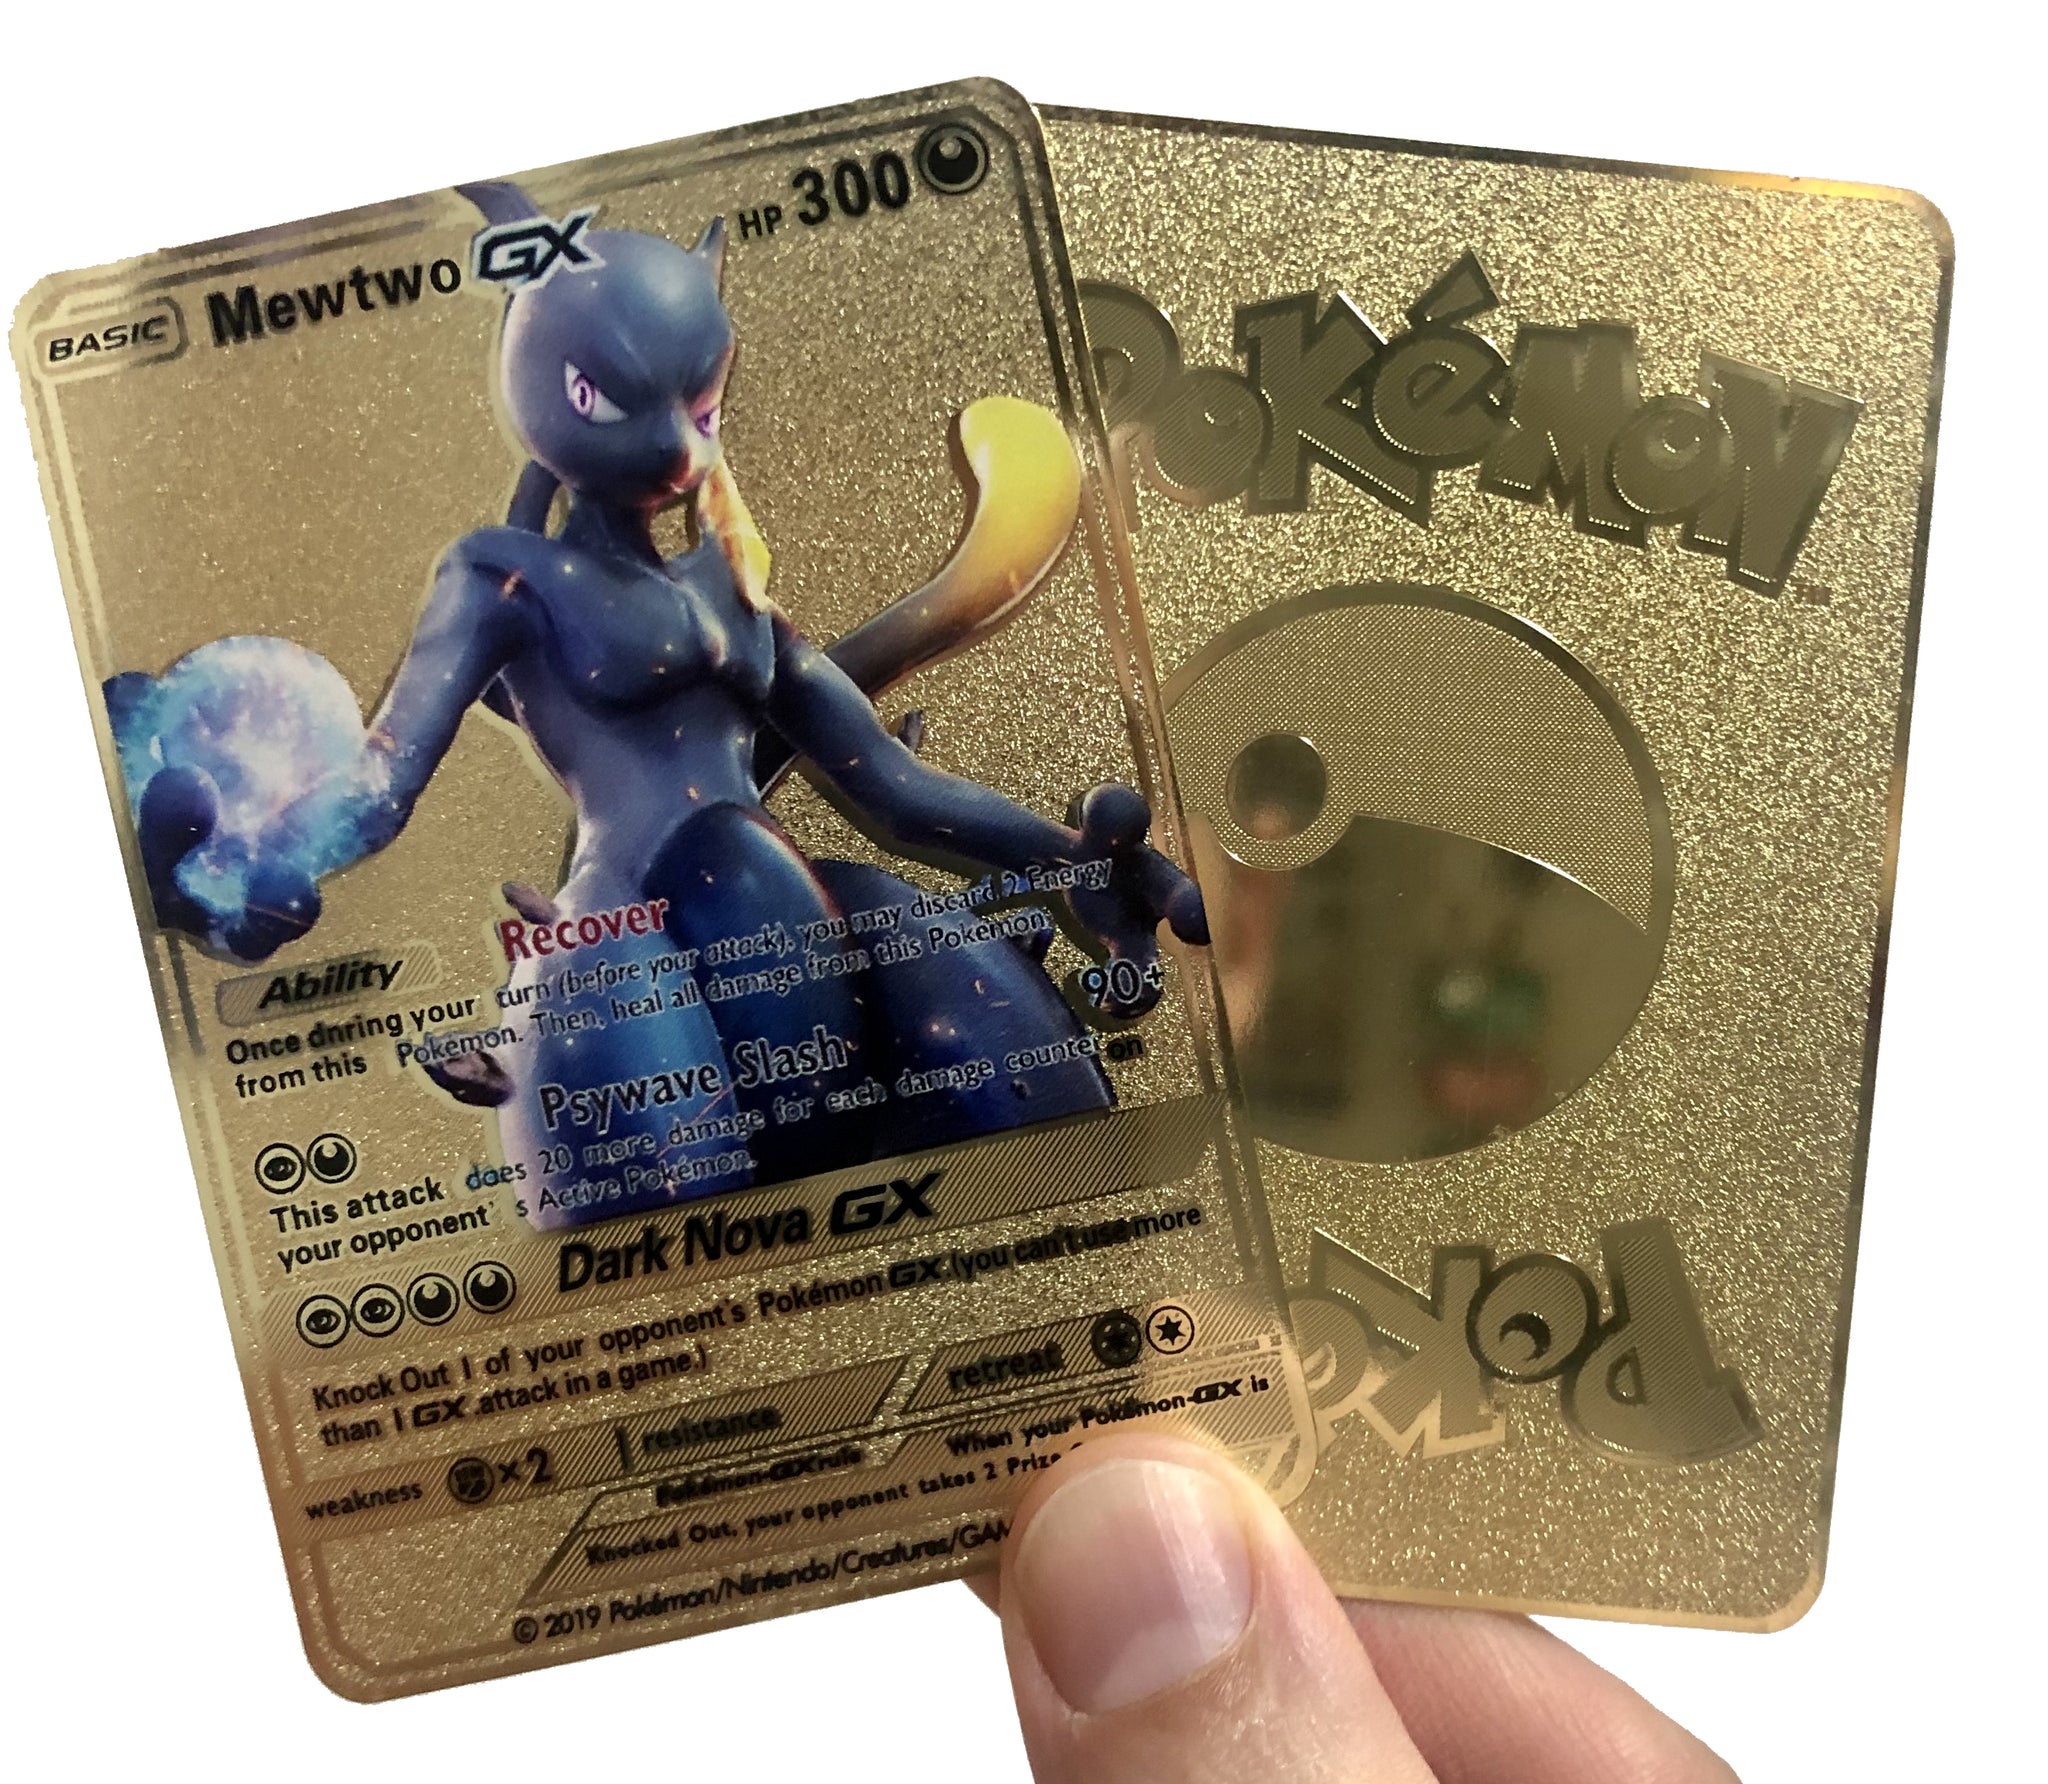 pokemon mewtwo card